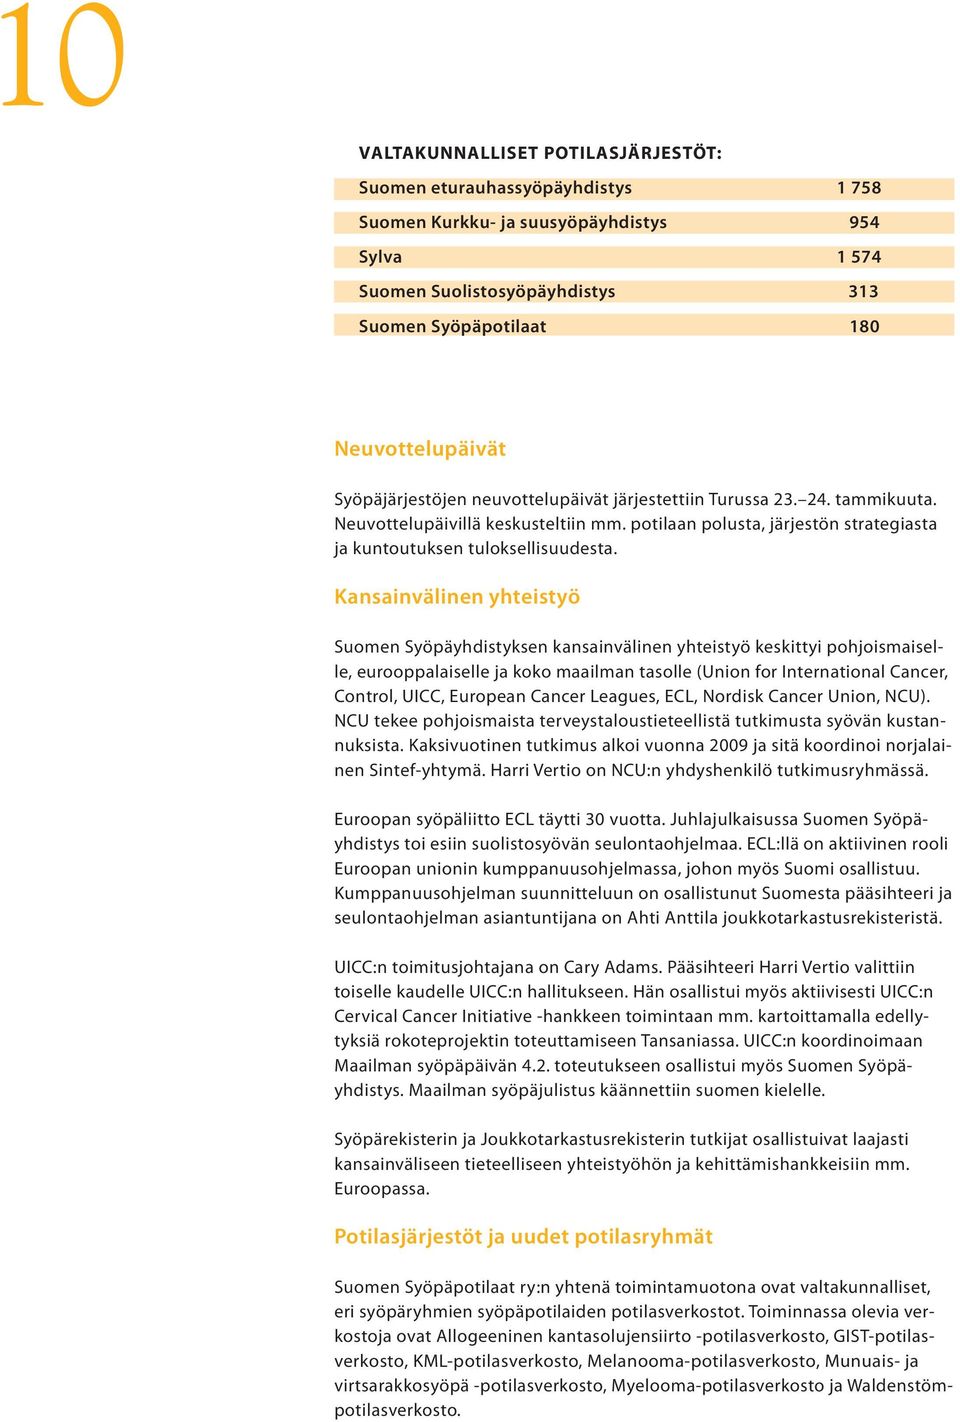 Kansainvälinen yhteistyö Suomen Syöpäyhdistyksen kansainvälinen yhteistyö keskittyi pohjoismaiselle, eurooppalaiselle ja koko maailman tasolle (Union for International Cancer, Control, UICC, European